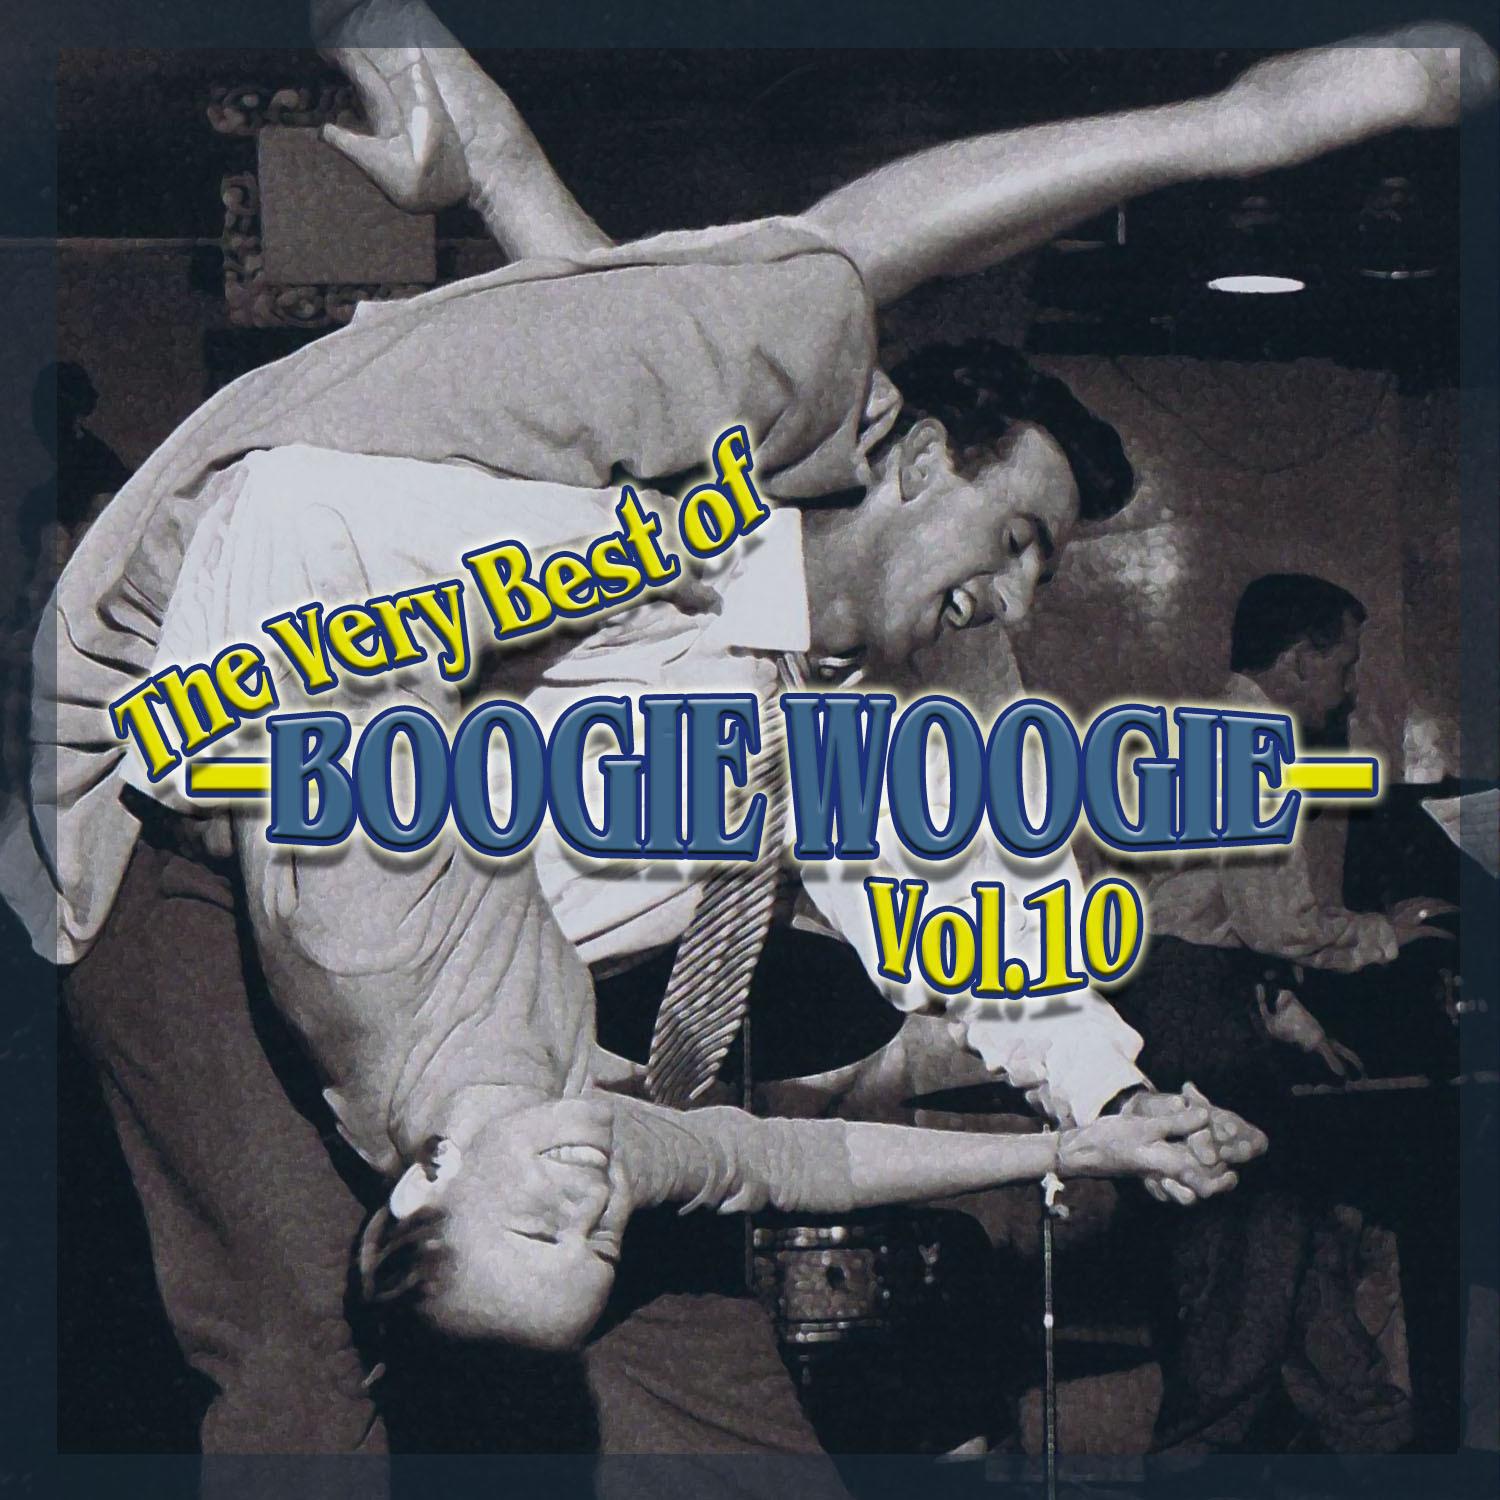 The Very Best of Boogie Woogie, Vol. 10